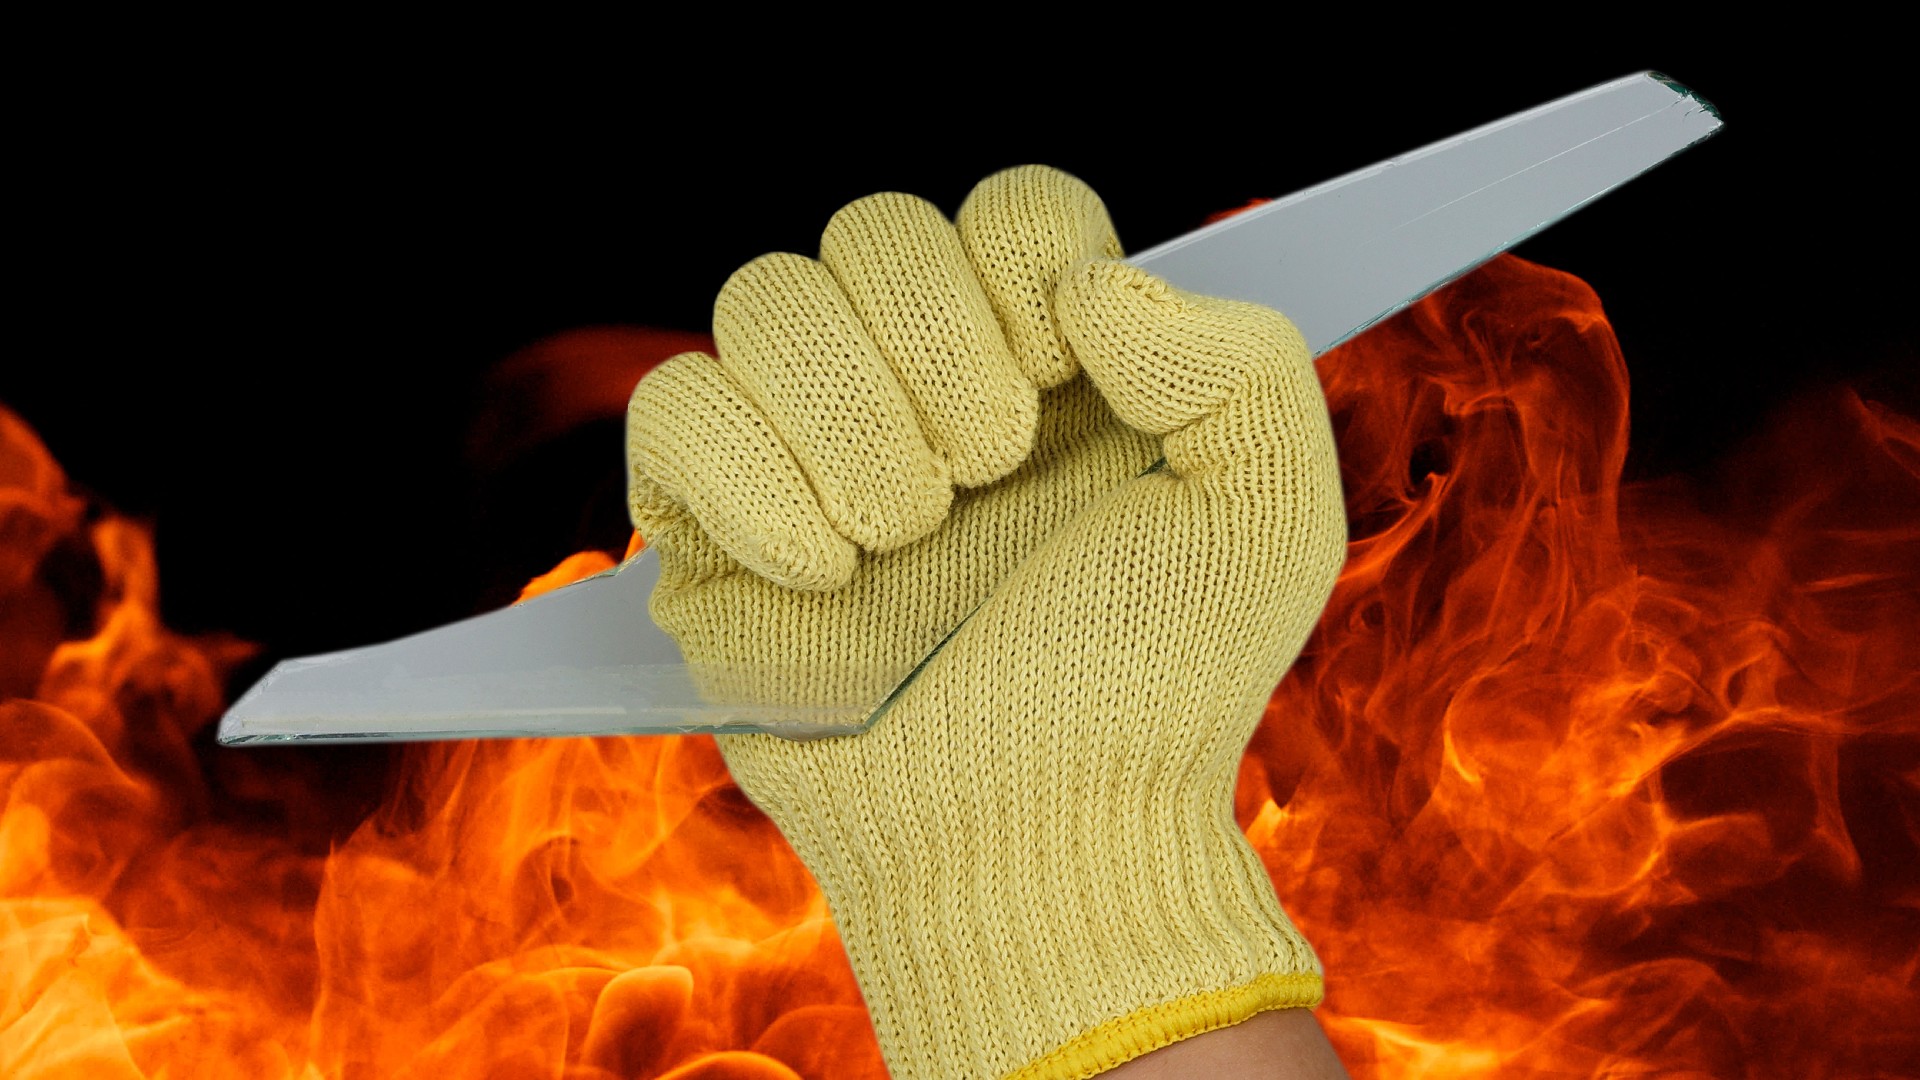 kevlar cut resistant gloves